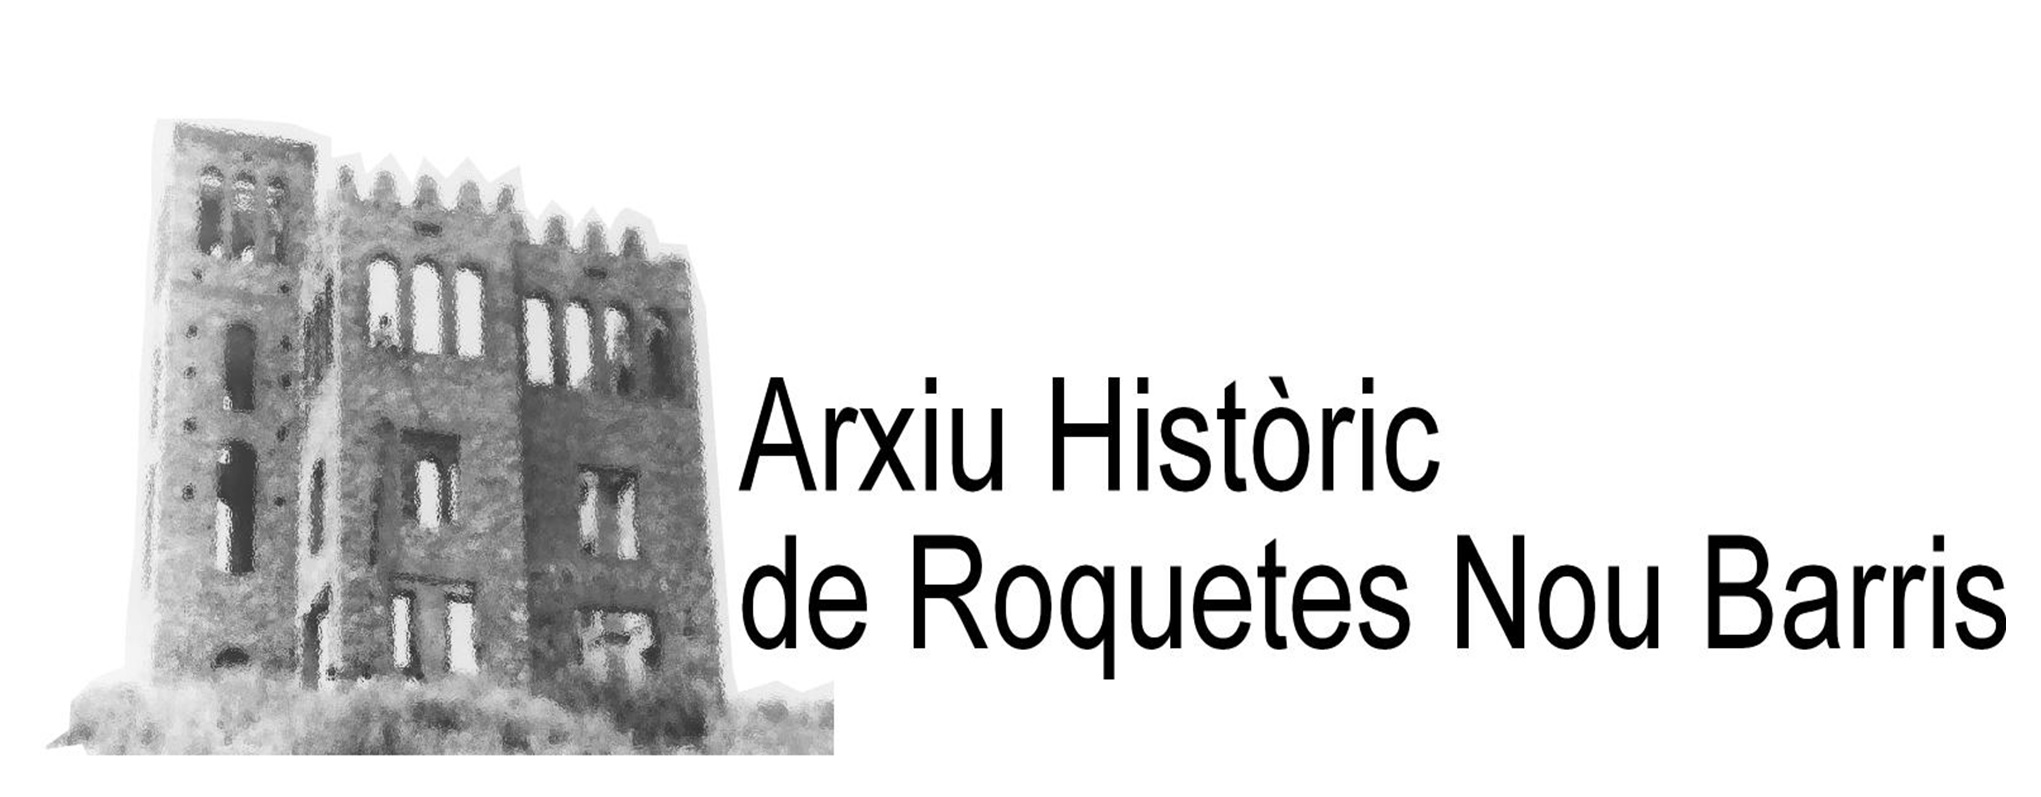 Arxiu Històric de Roquetes-Nou Barris